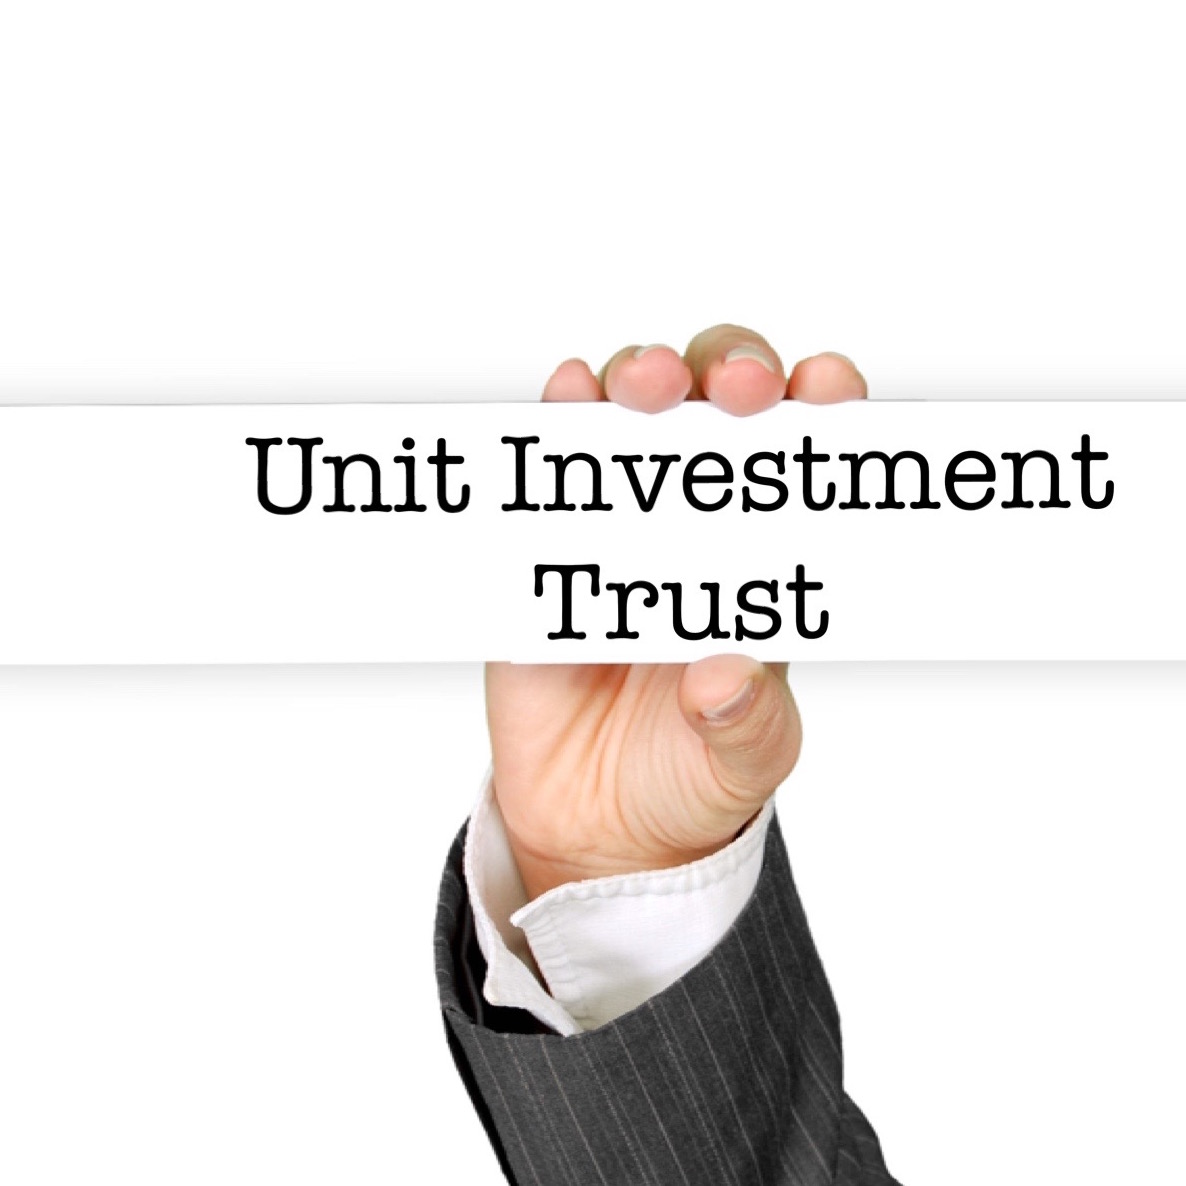 Unit Investment Trust